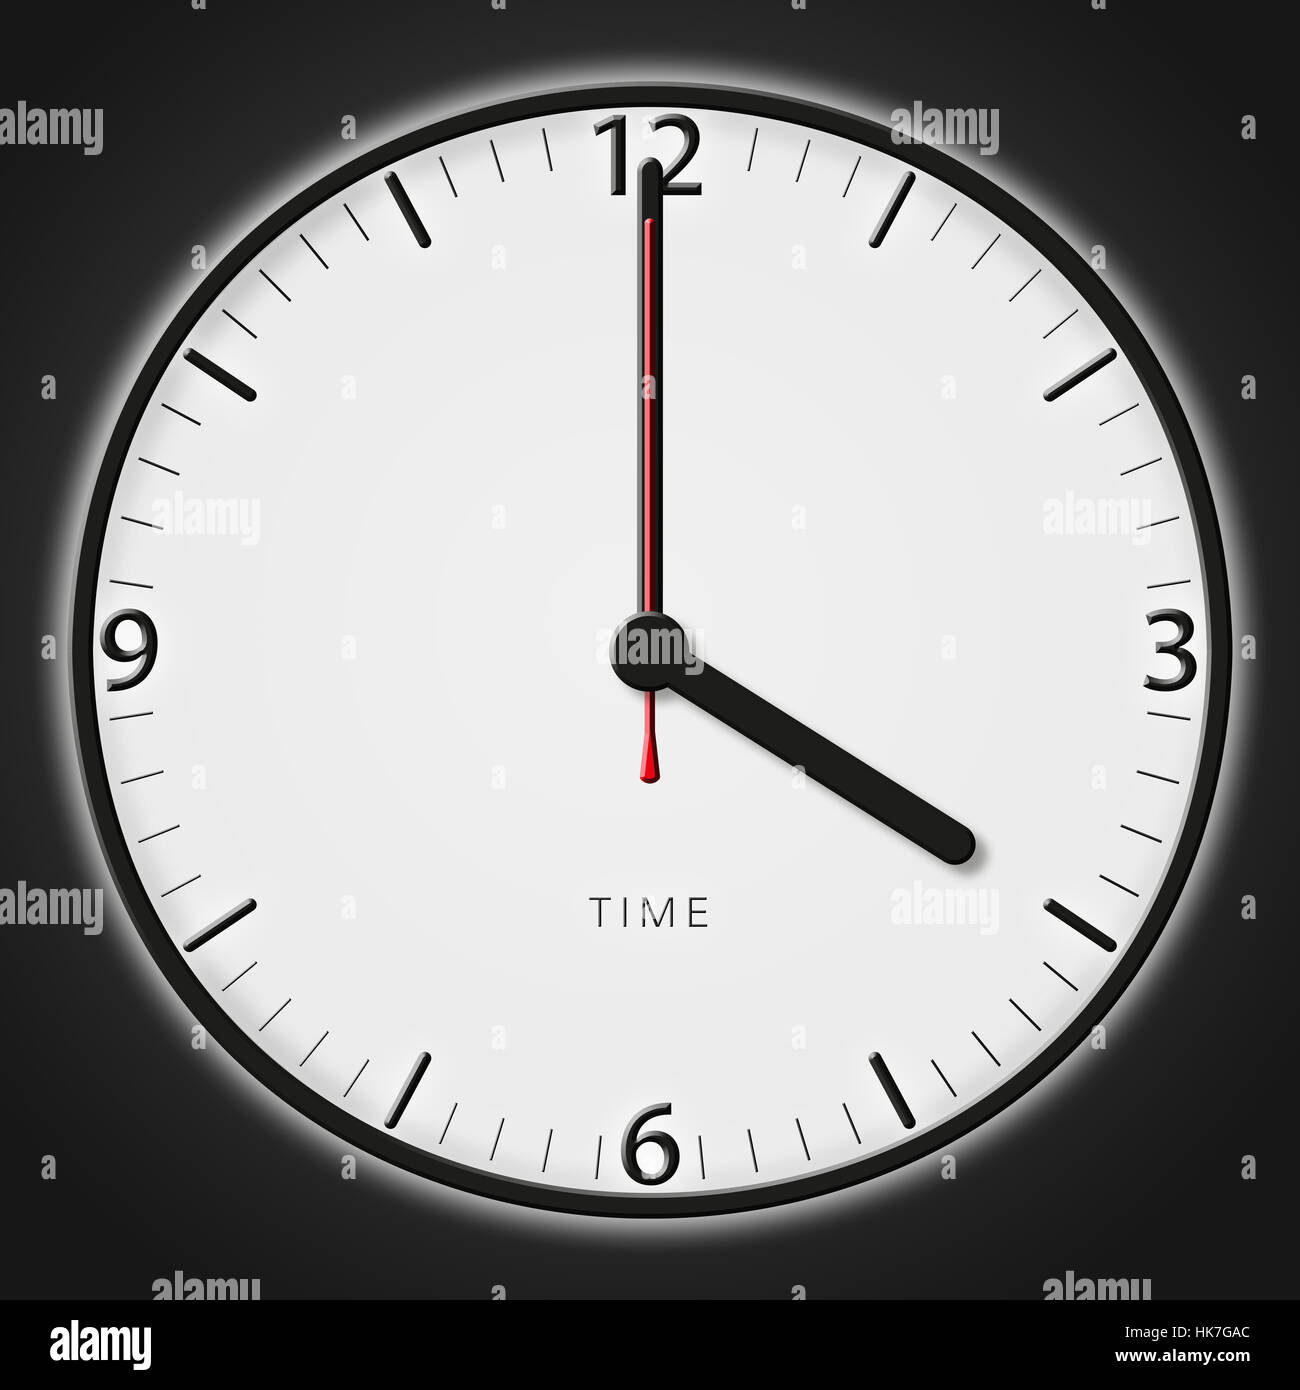 Uhr, Zeit, Stunde, Stunde, Uhr, Zeiger, Zeit, Sekunden, Minuten, Stunden  Stockfotografie - Alamy